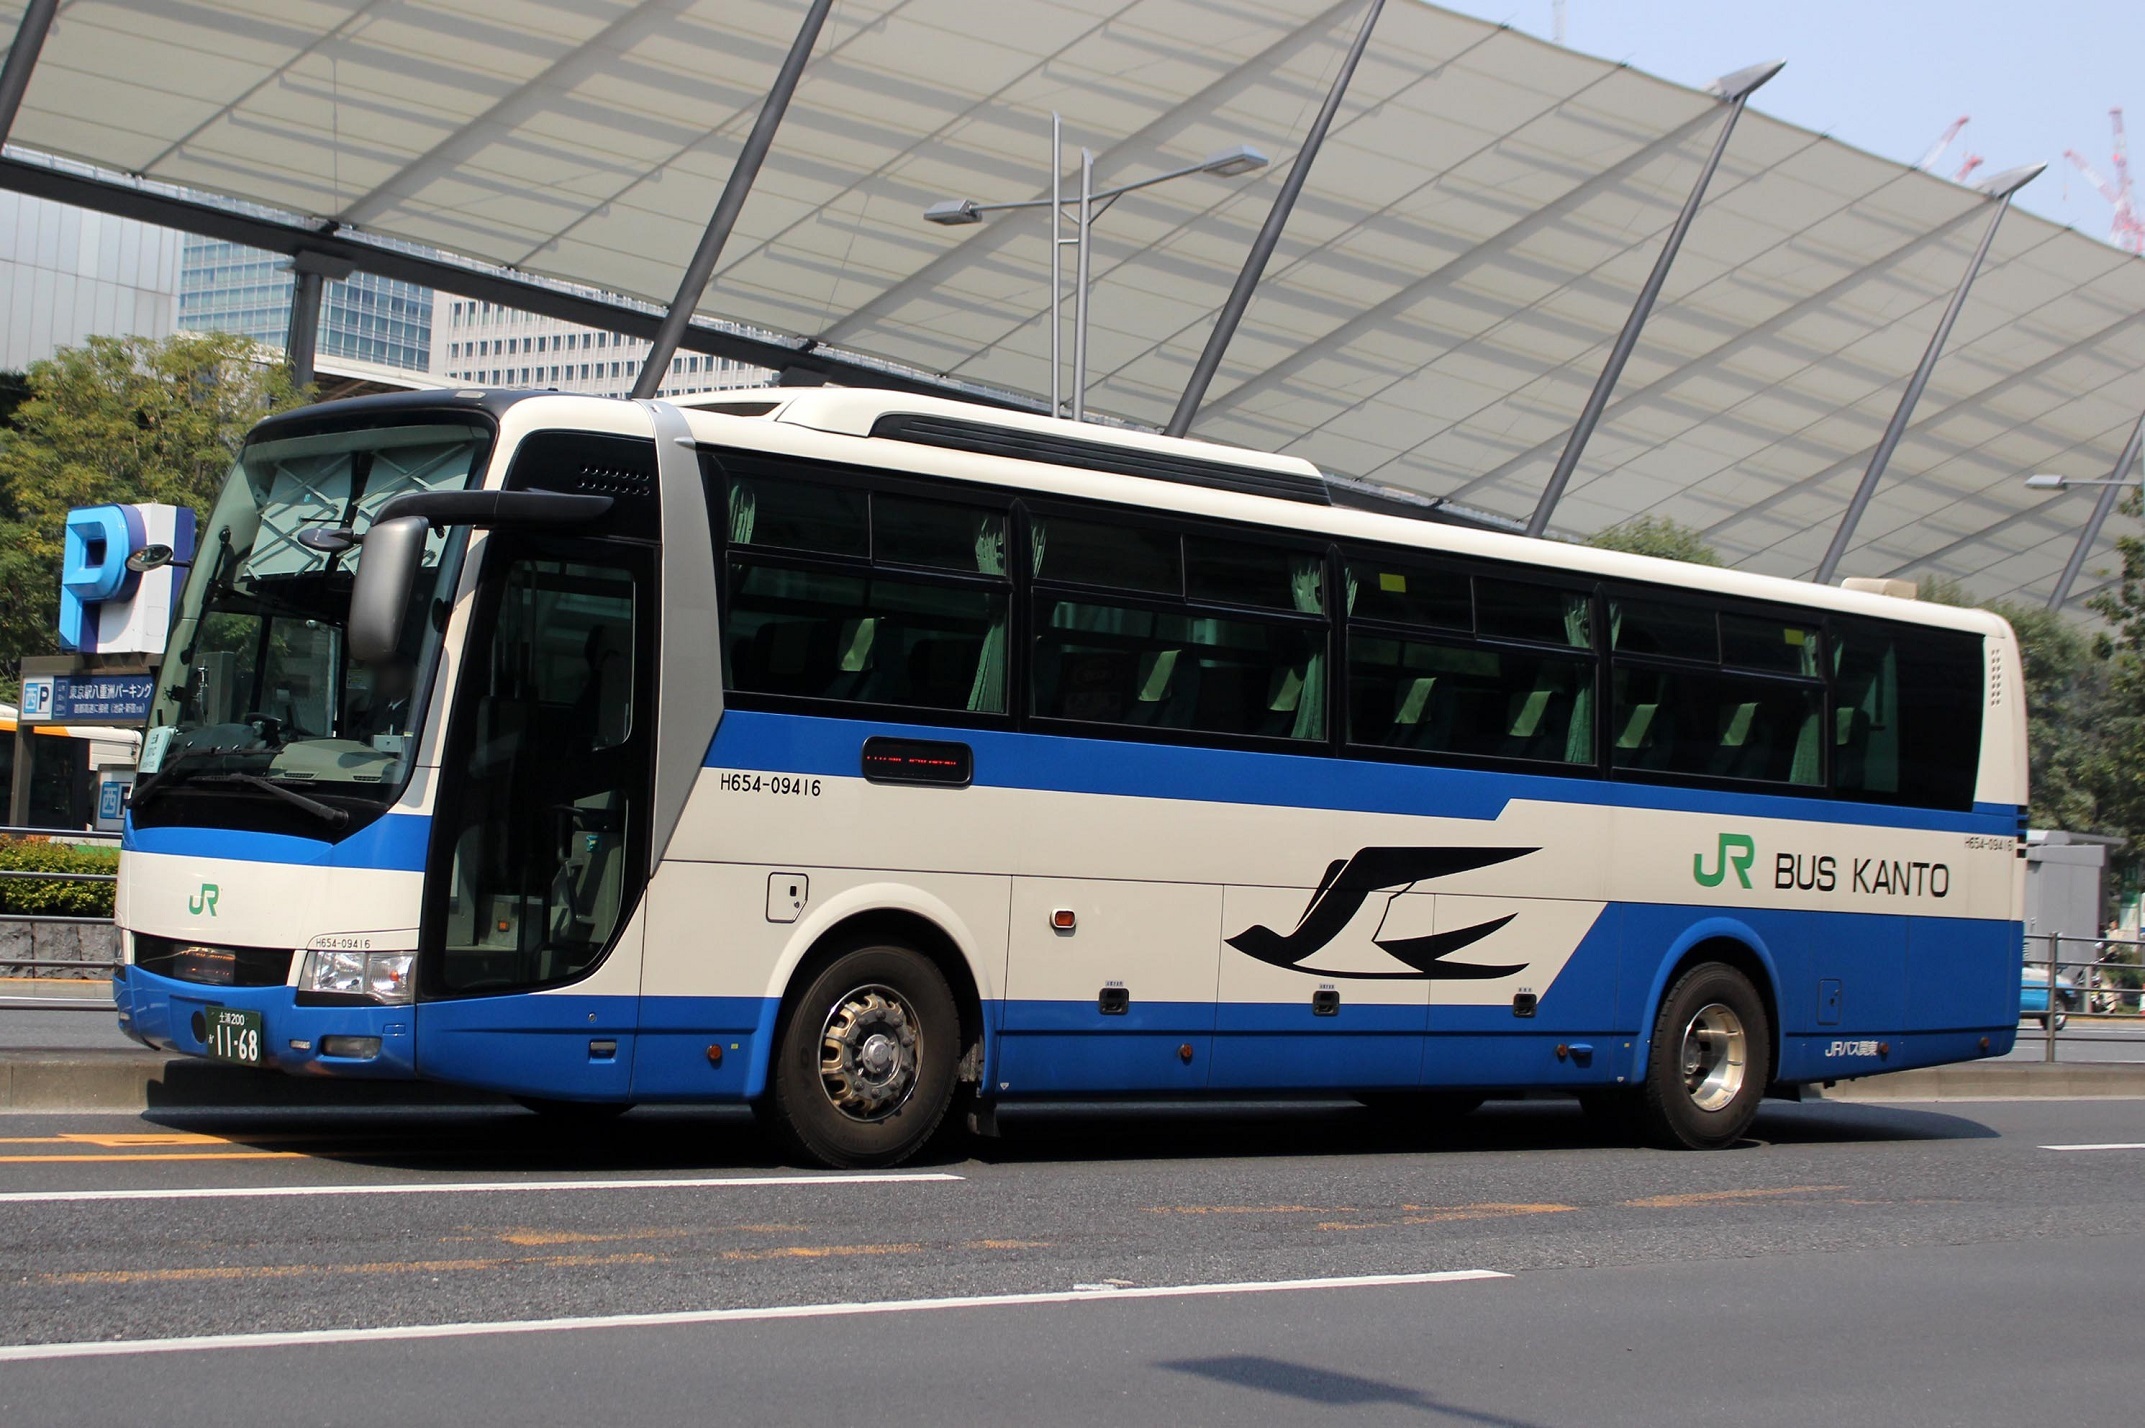 JRバス関東 H654-09416